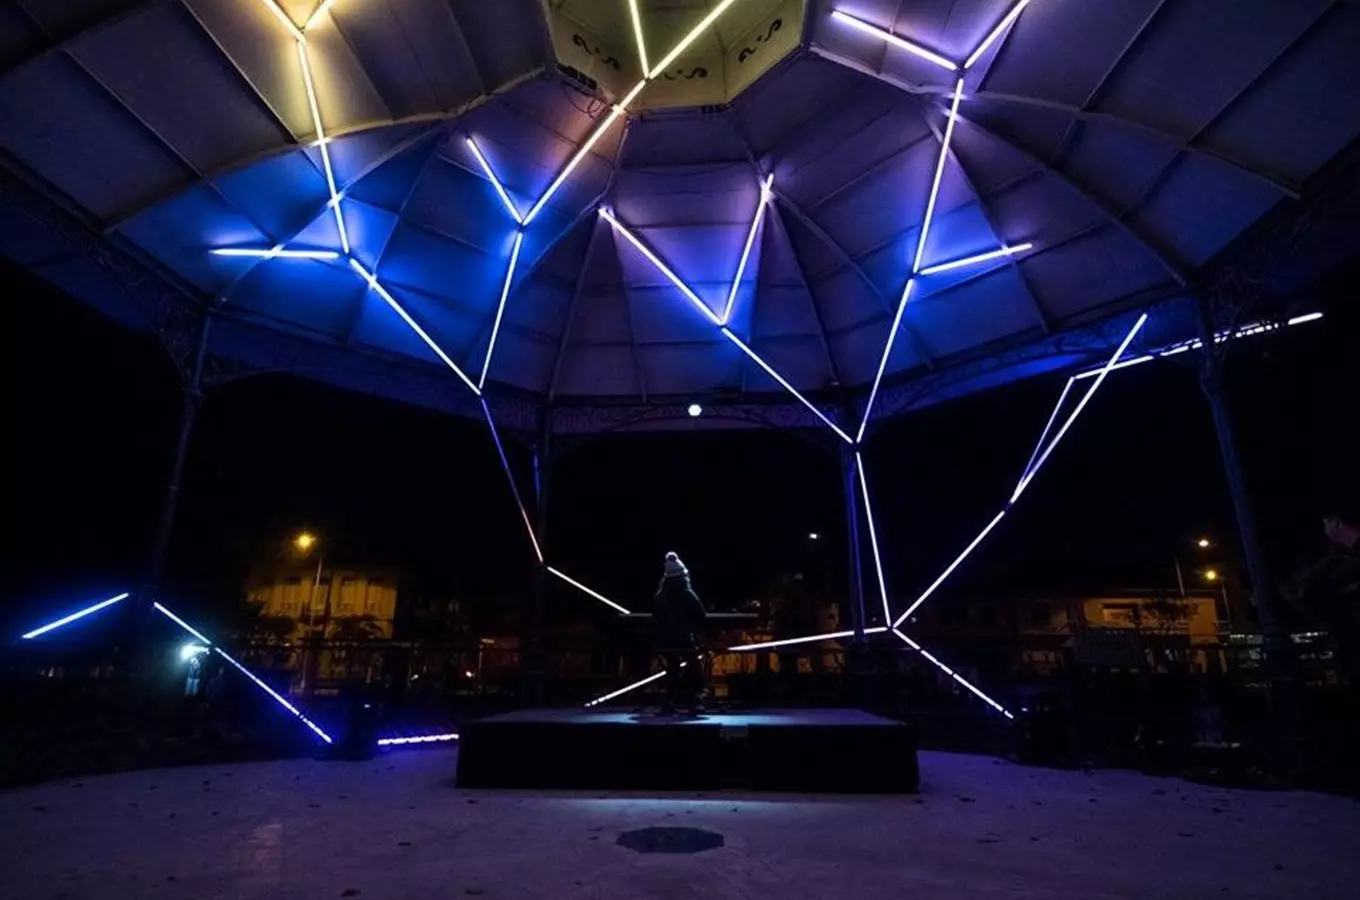 V plzeňském DEPO2015 objevíte interaktivní výstavu spojující hru a zábavu s technologiemi a uměním